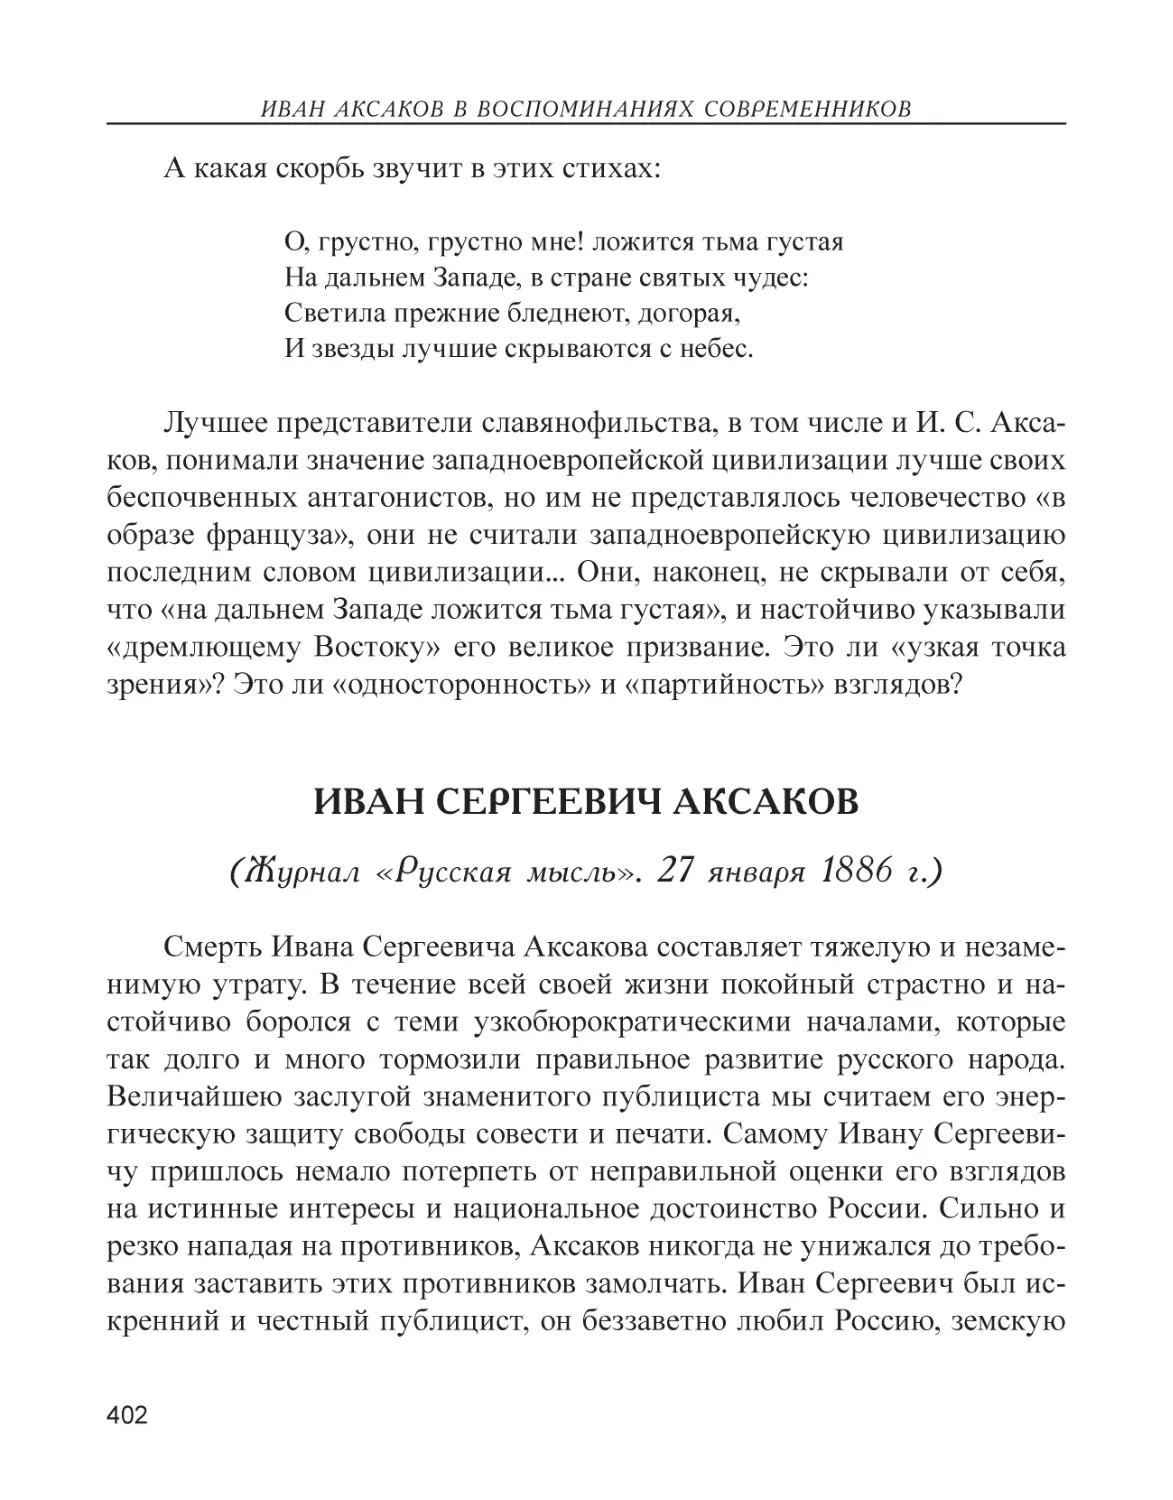 Иван Сергеевич Аксаков (Журнал «Русская мысль». 27 января 1886 г.)